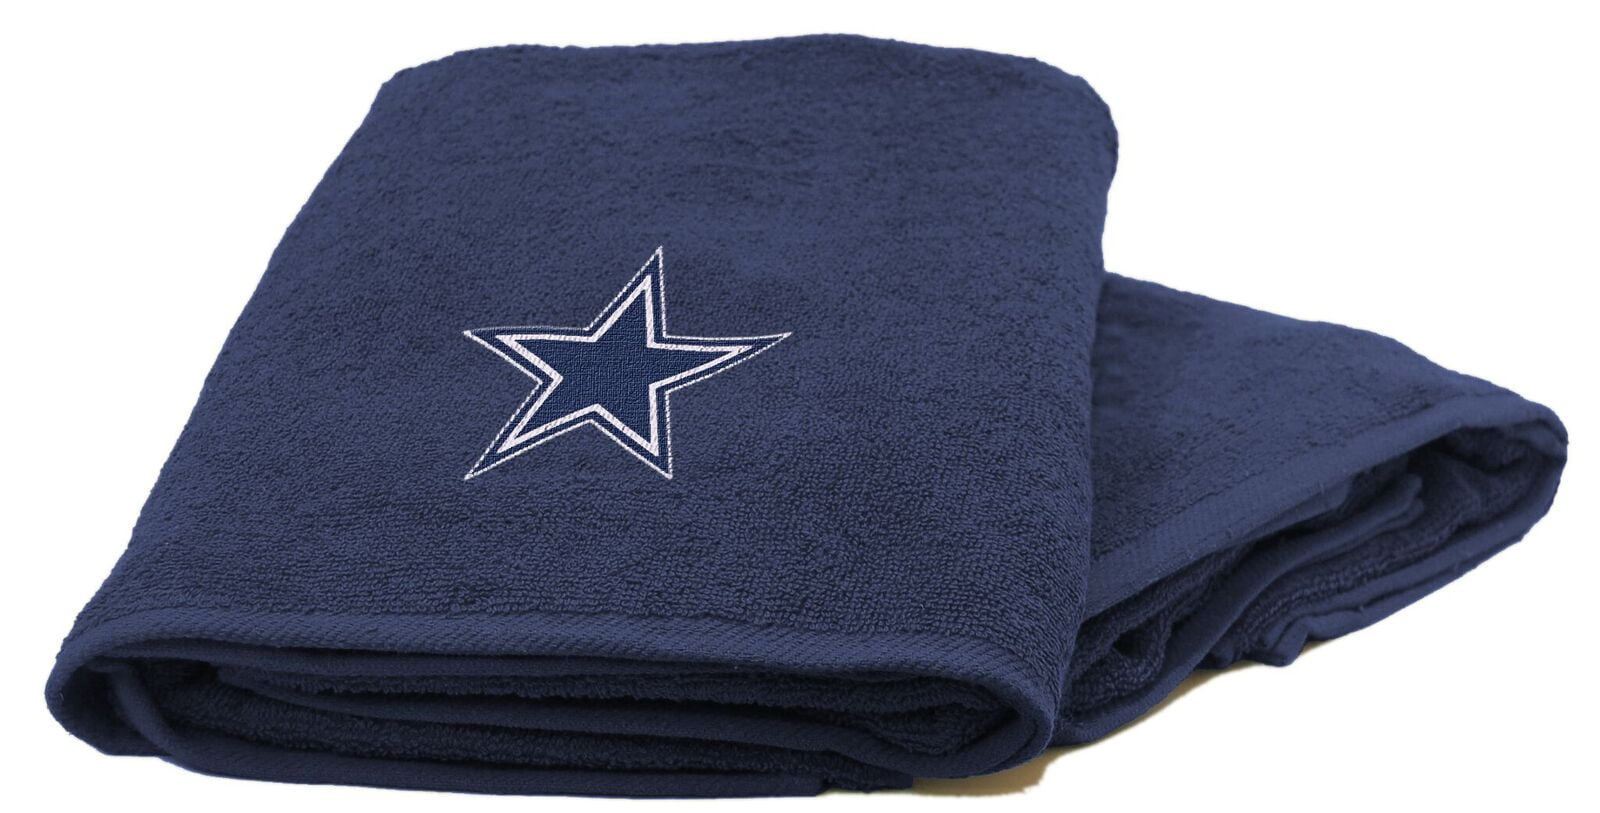 Cowboys Hooded Towel